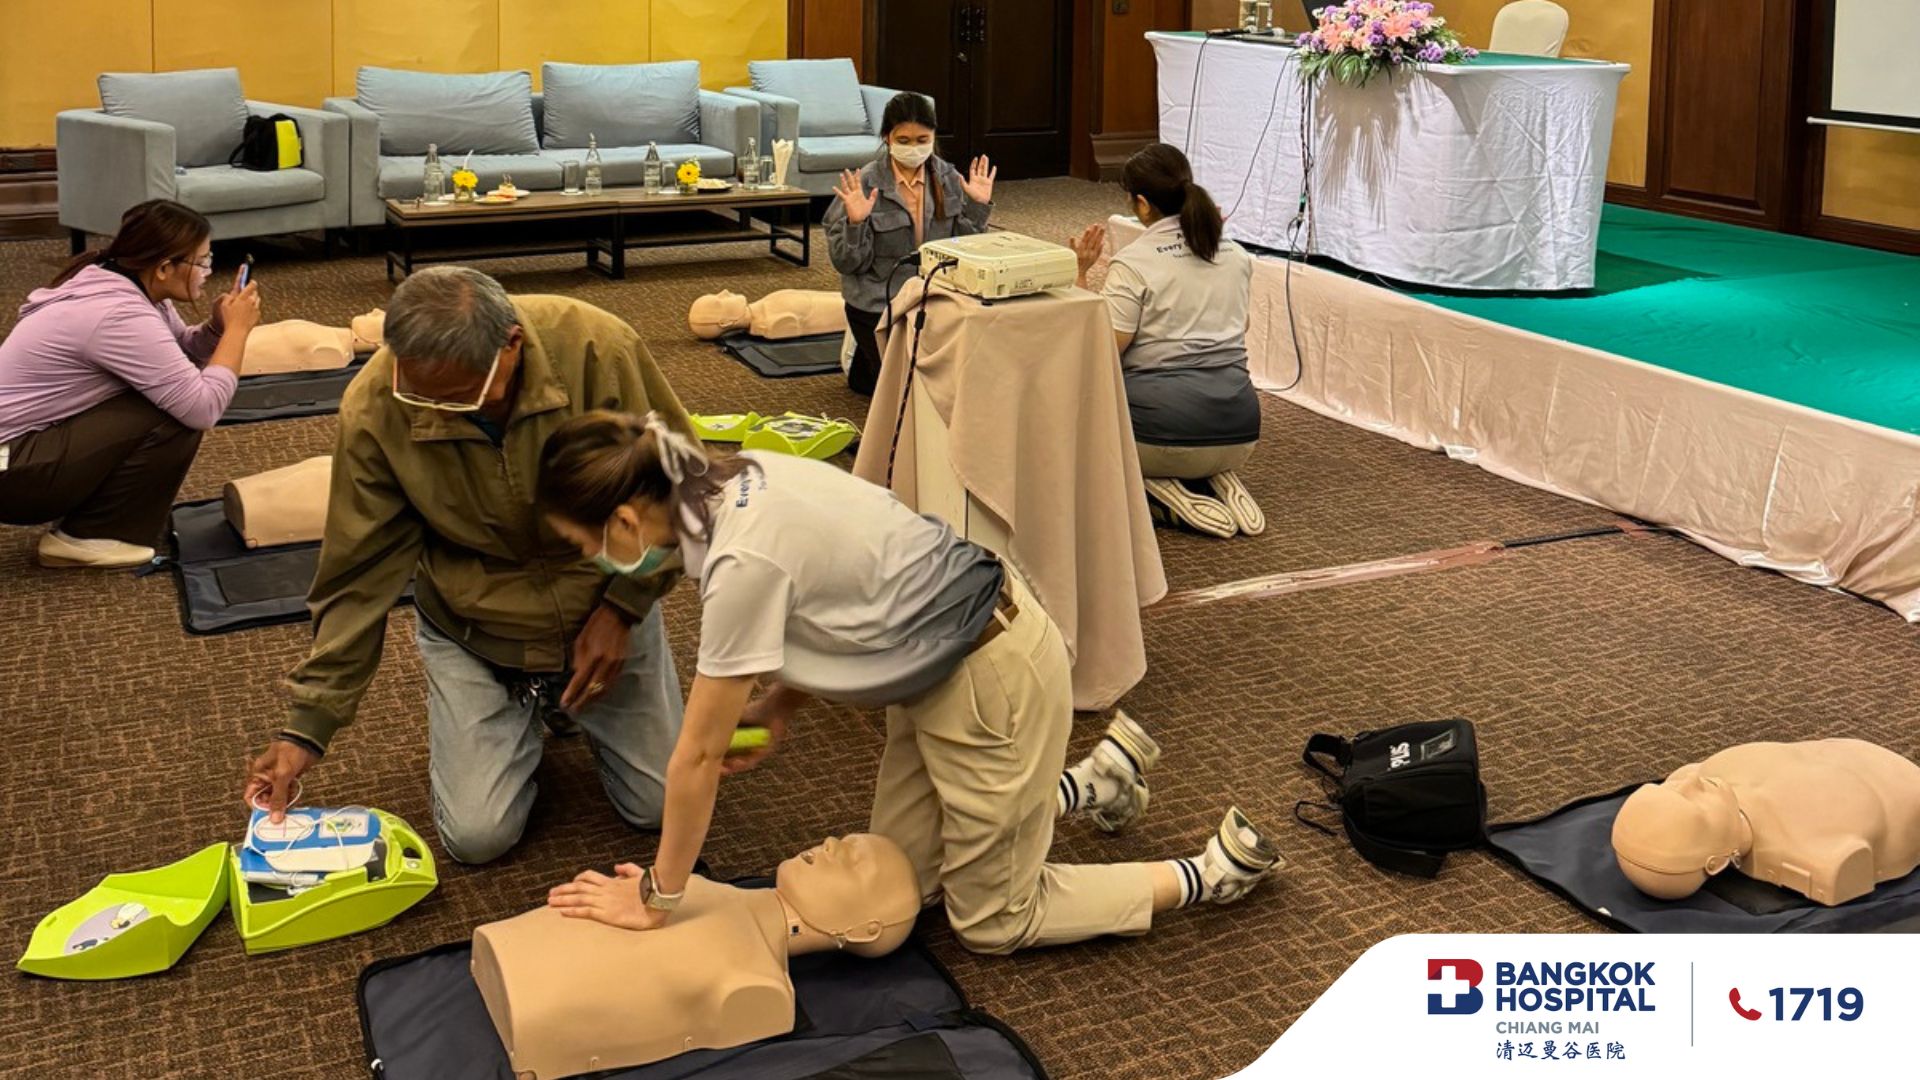 Bangkok hospital Chiang Mai Basic Life Support (BLS)